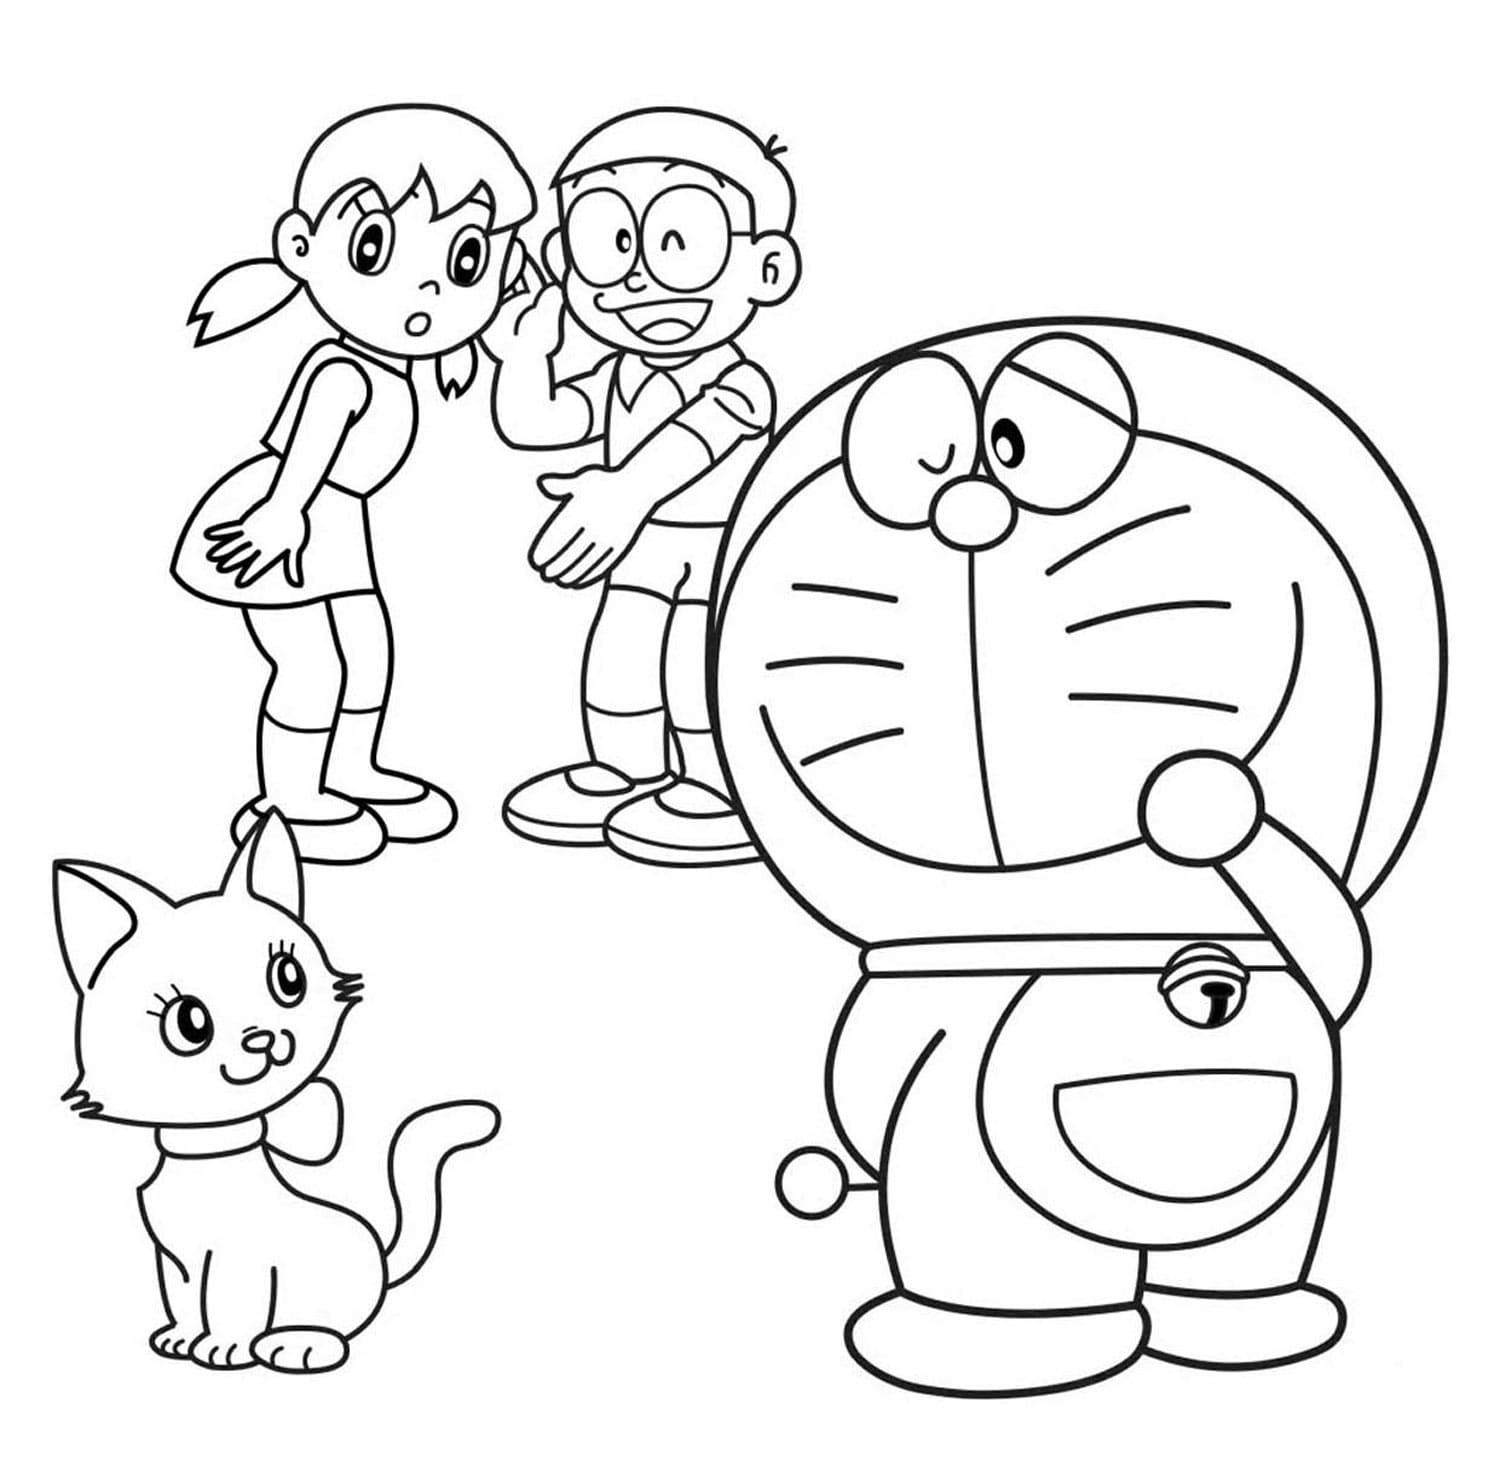 Thưởng thức tranh vẽ Doraemon đáng yêu với các trang tô màu miễn phí. Hãy tô màu những chú mèo robot và bạn bè với nhiều màu sắc khác nhau!